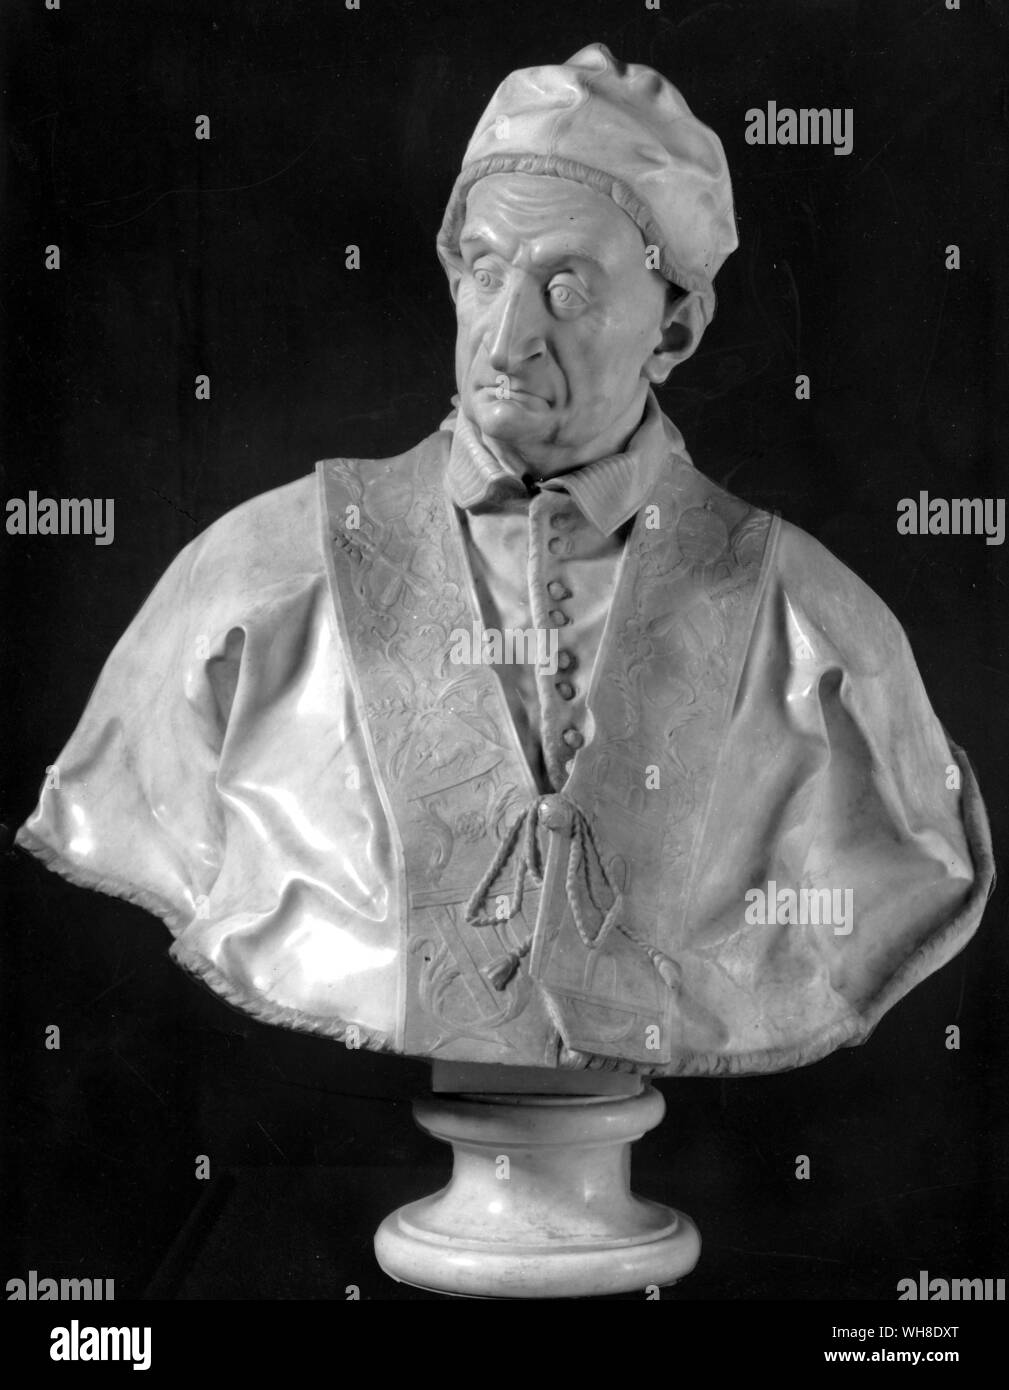 Busto di Benedetto XIII tra 1740-1750. Benedetto XIII, nato Pietro Francesco Orsini, poi Vincenzo Maria Orsini (1649-1730), fu Papa dal 1724 al 1730. Succedette a Papa Innocenzo XIII (172-24) nel 1724. Foto Stock